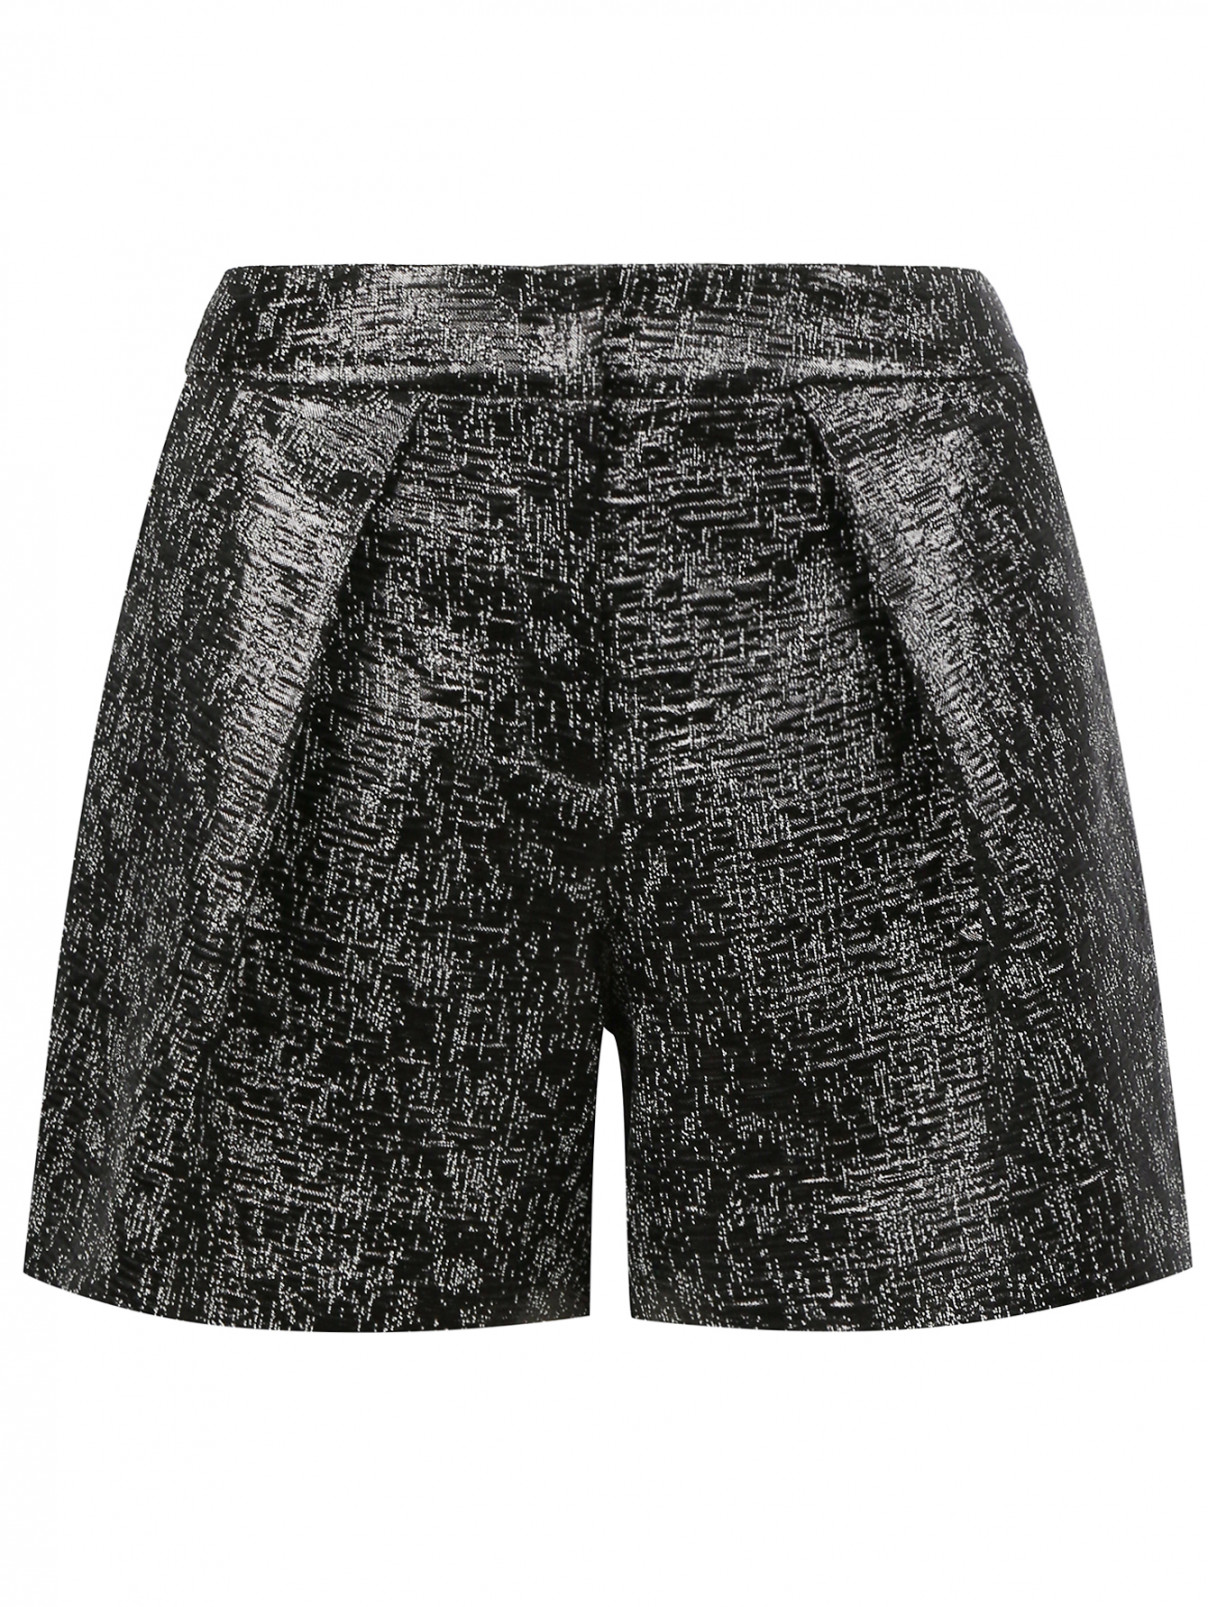 Свободные короткие шорты с узором Kira Plastinina  –  Общий вид  – Цвет:  Черный